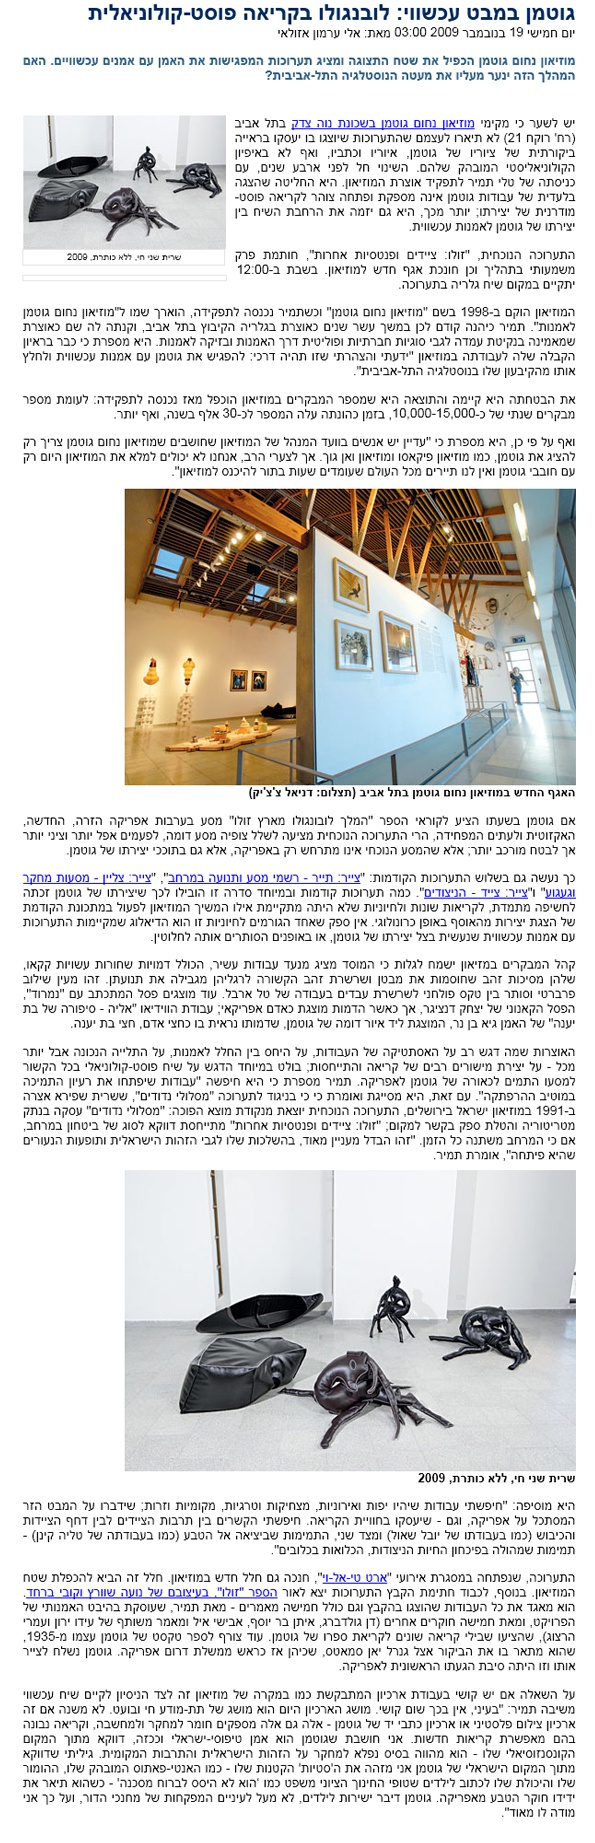 Haaretz Gallery